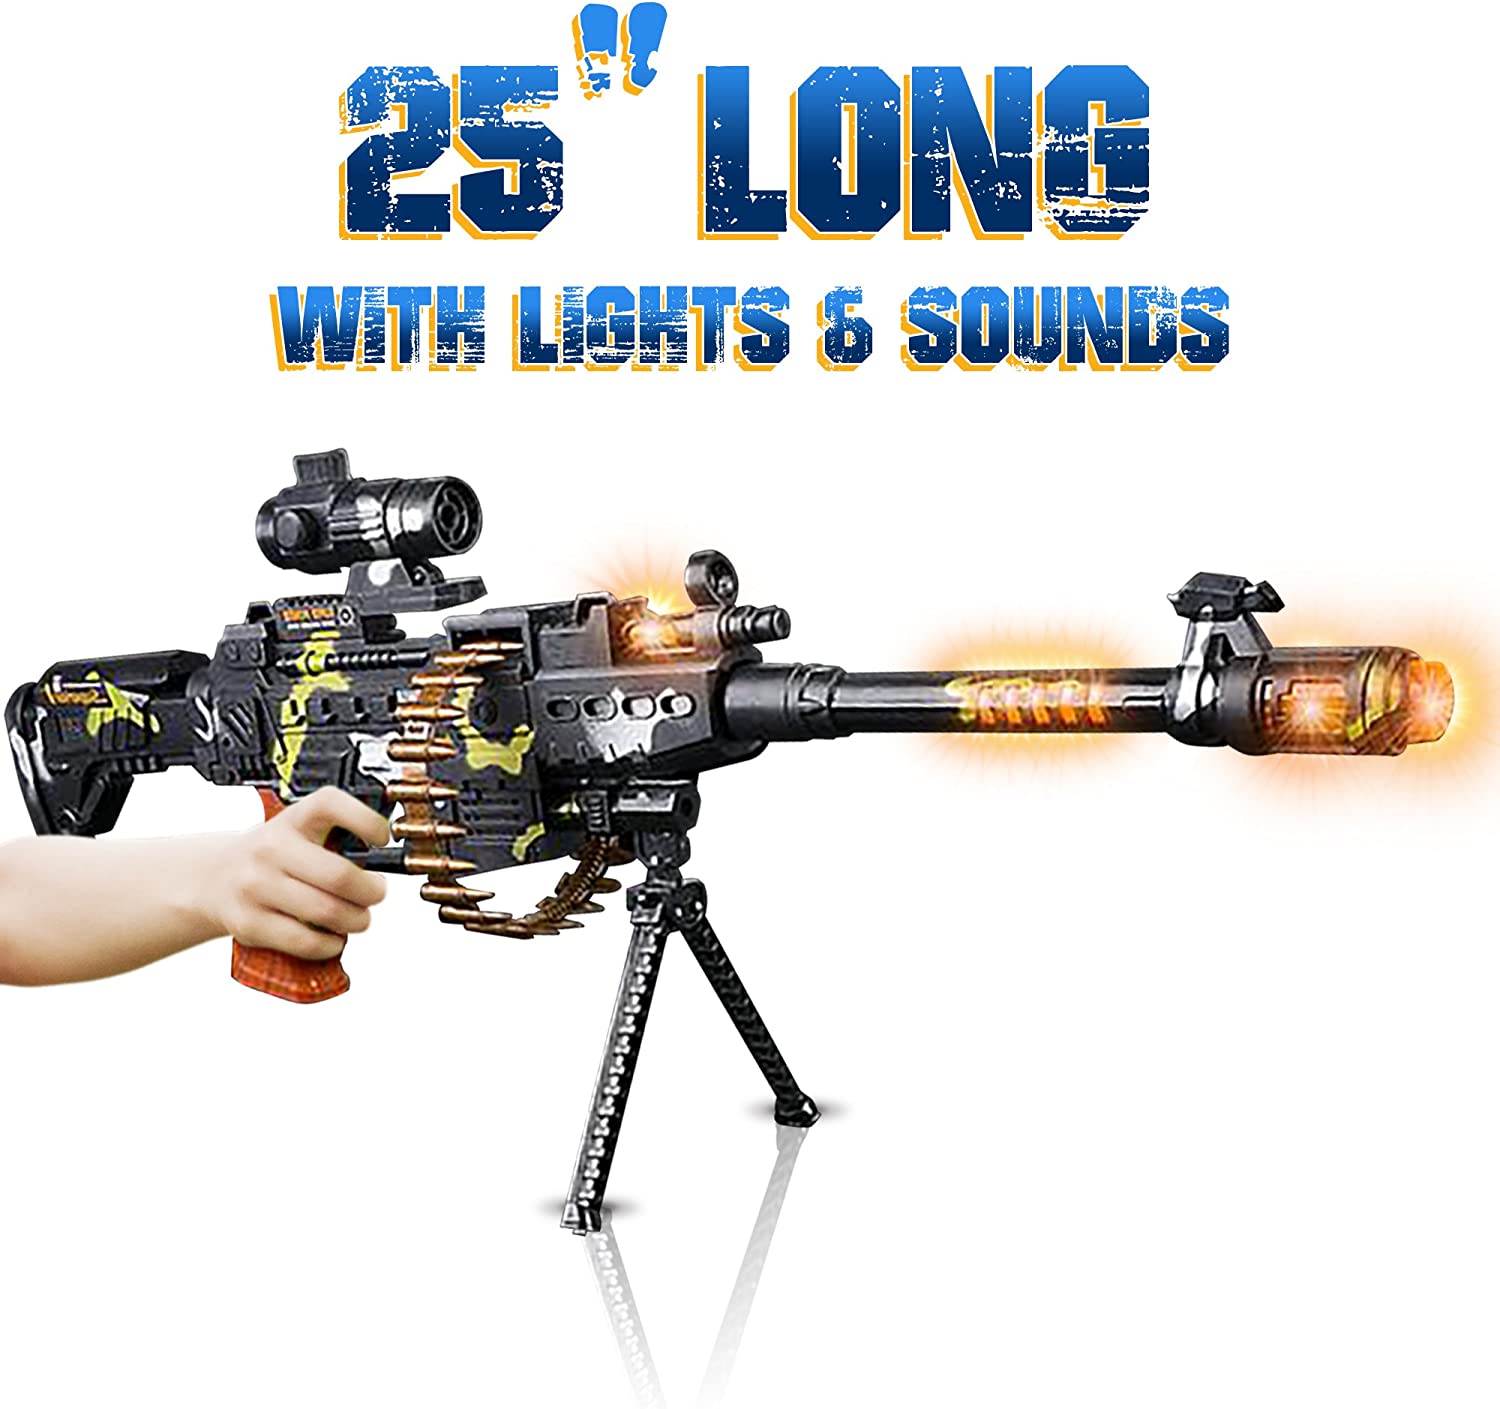 Source Novo modelo de metralhadora AK simulação arma elétrica  acústico-óptica brinquedo on m.alibaba.com